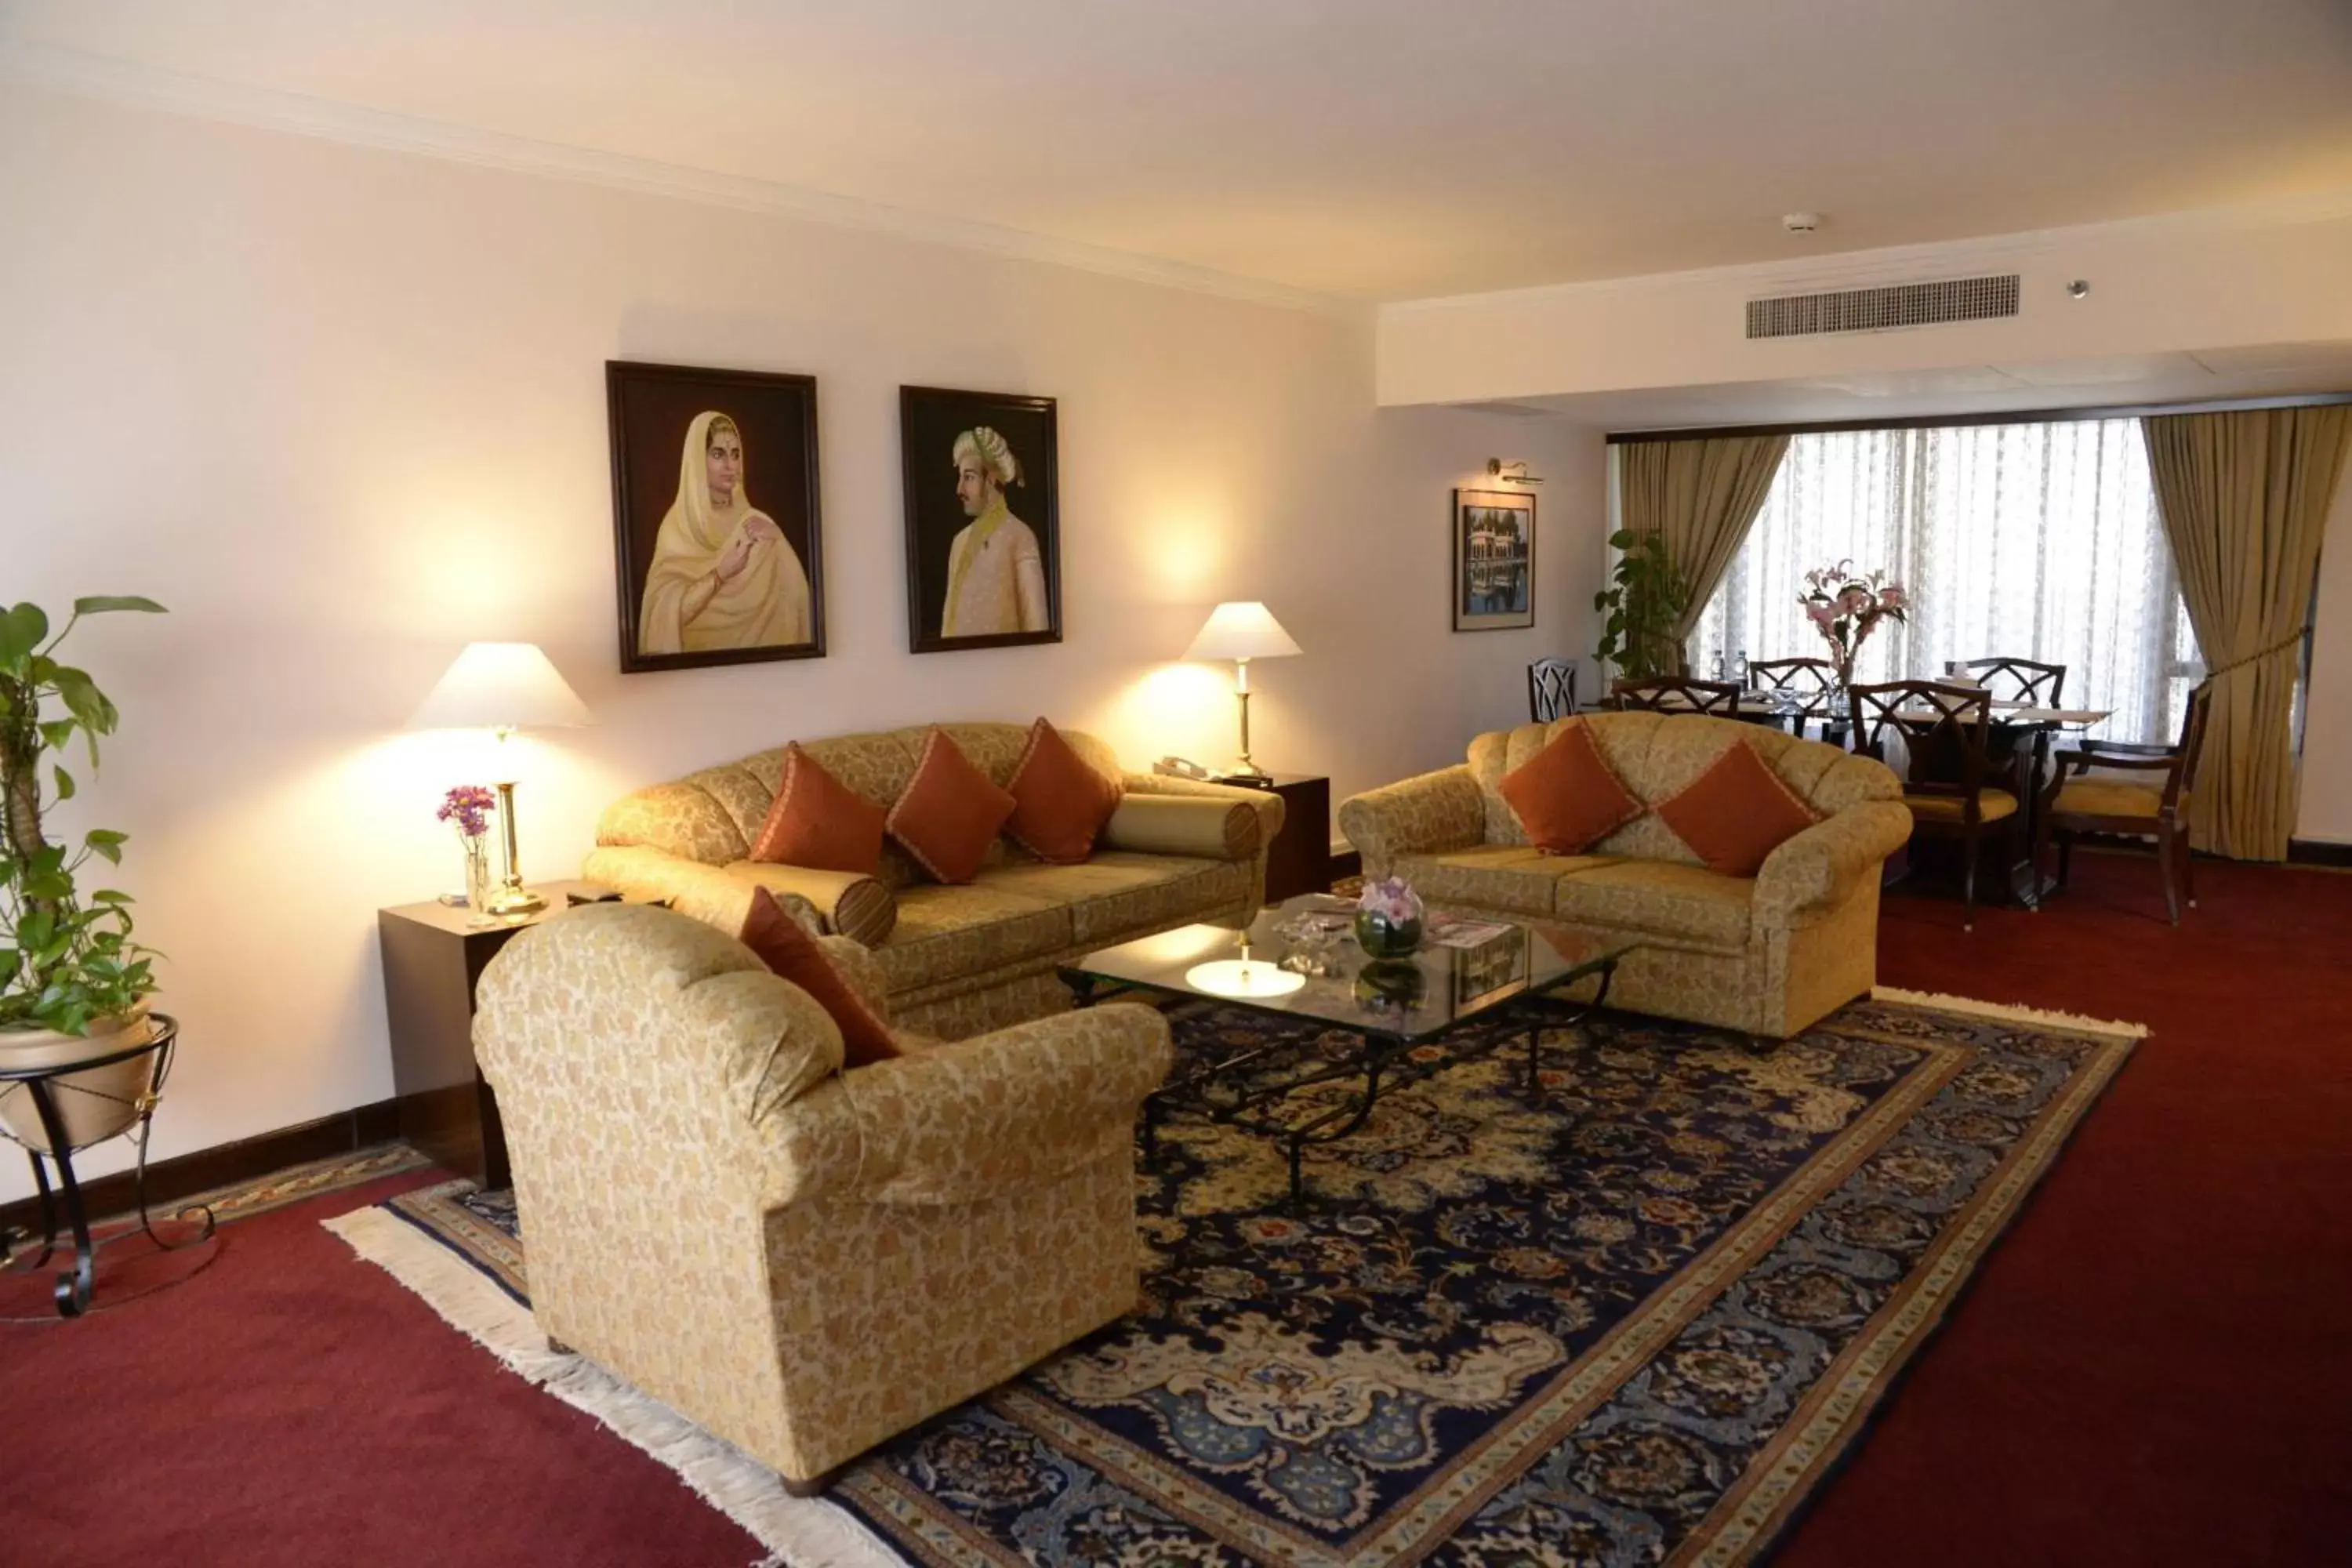 Bedroom, Seating Area in Karachi Marriott Hotel